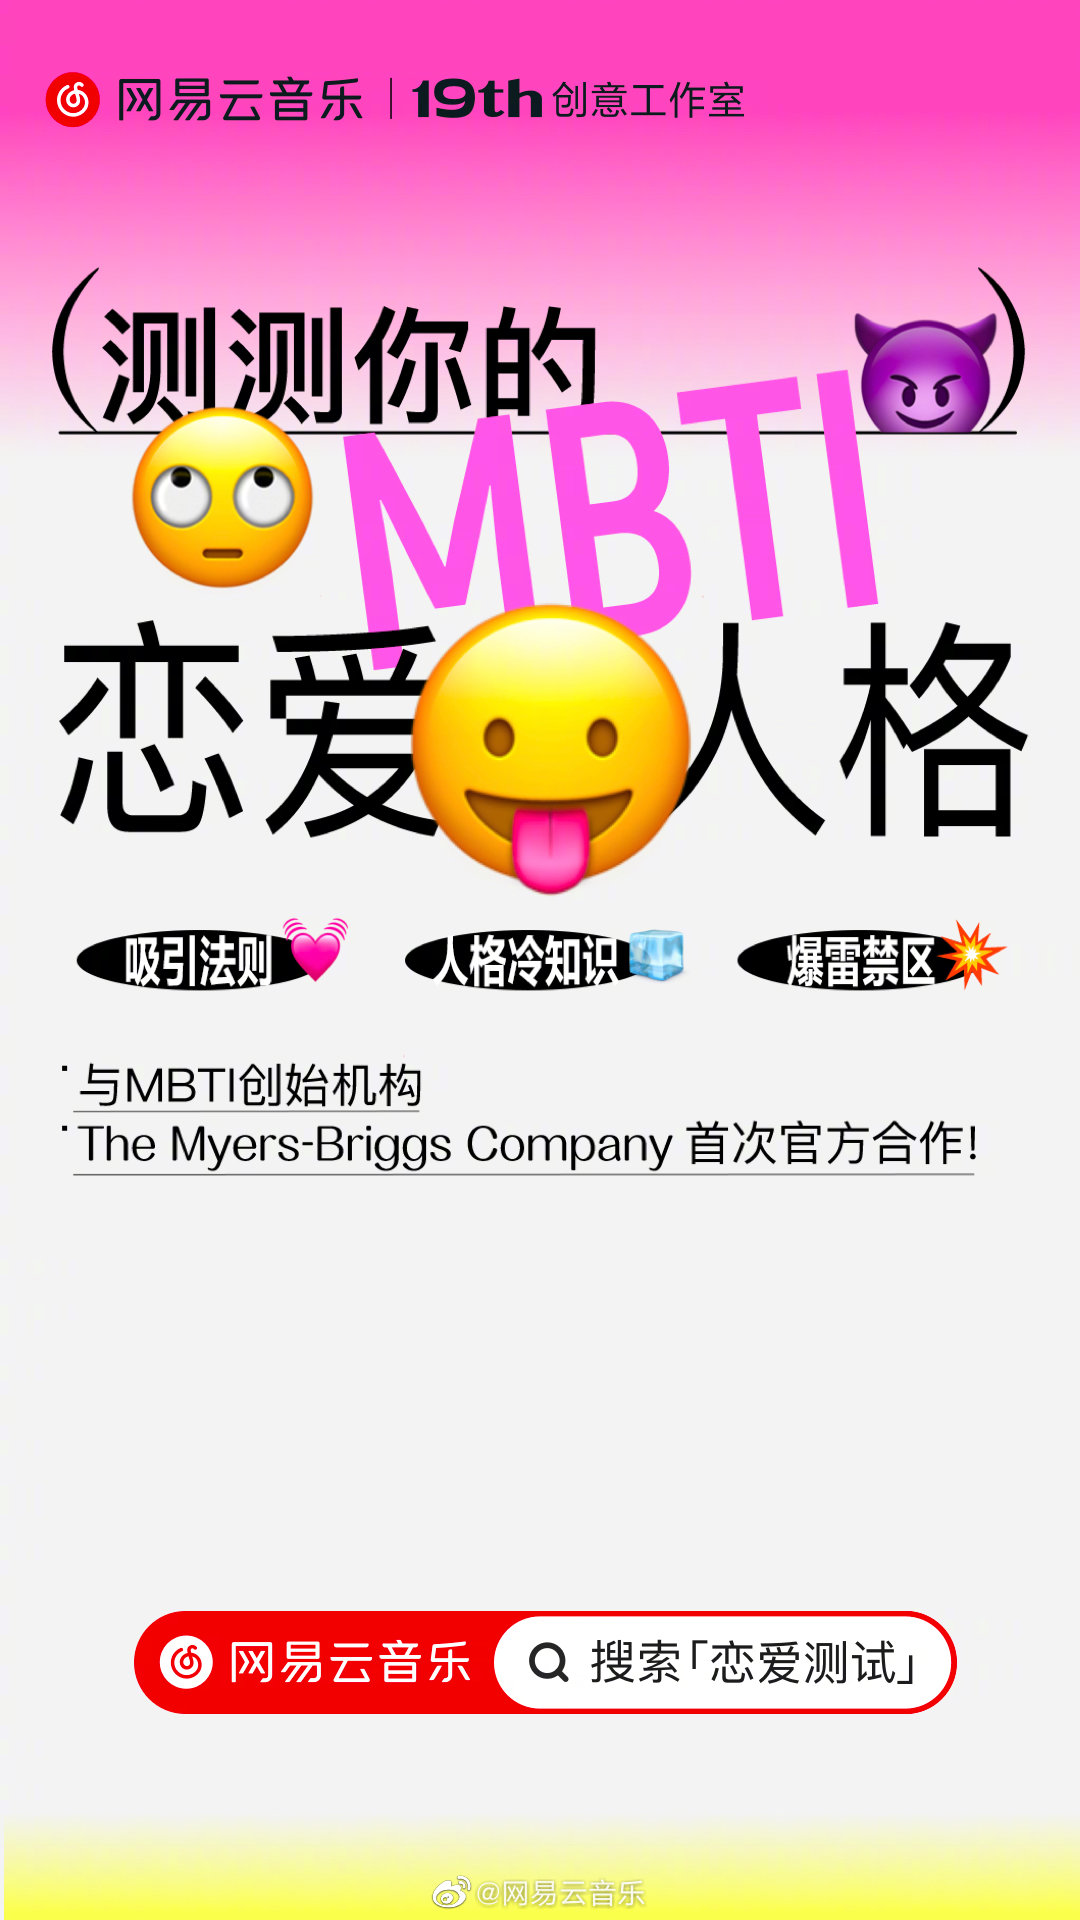 网易云音乐 520 帮你测「恋爱 MBTI 人格」